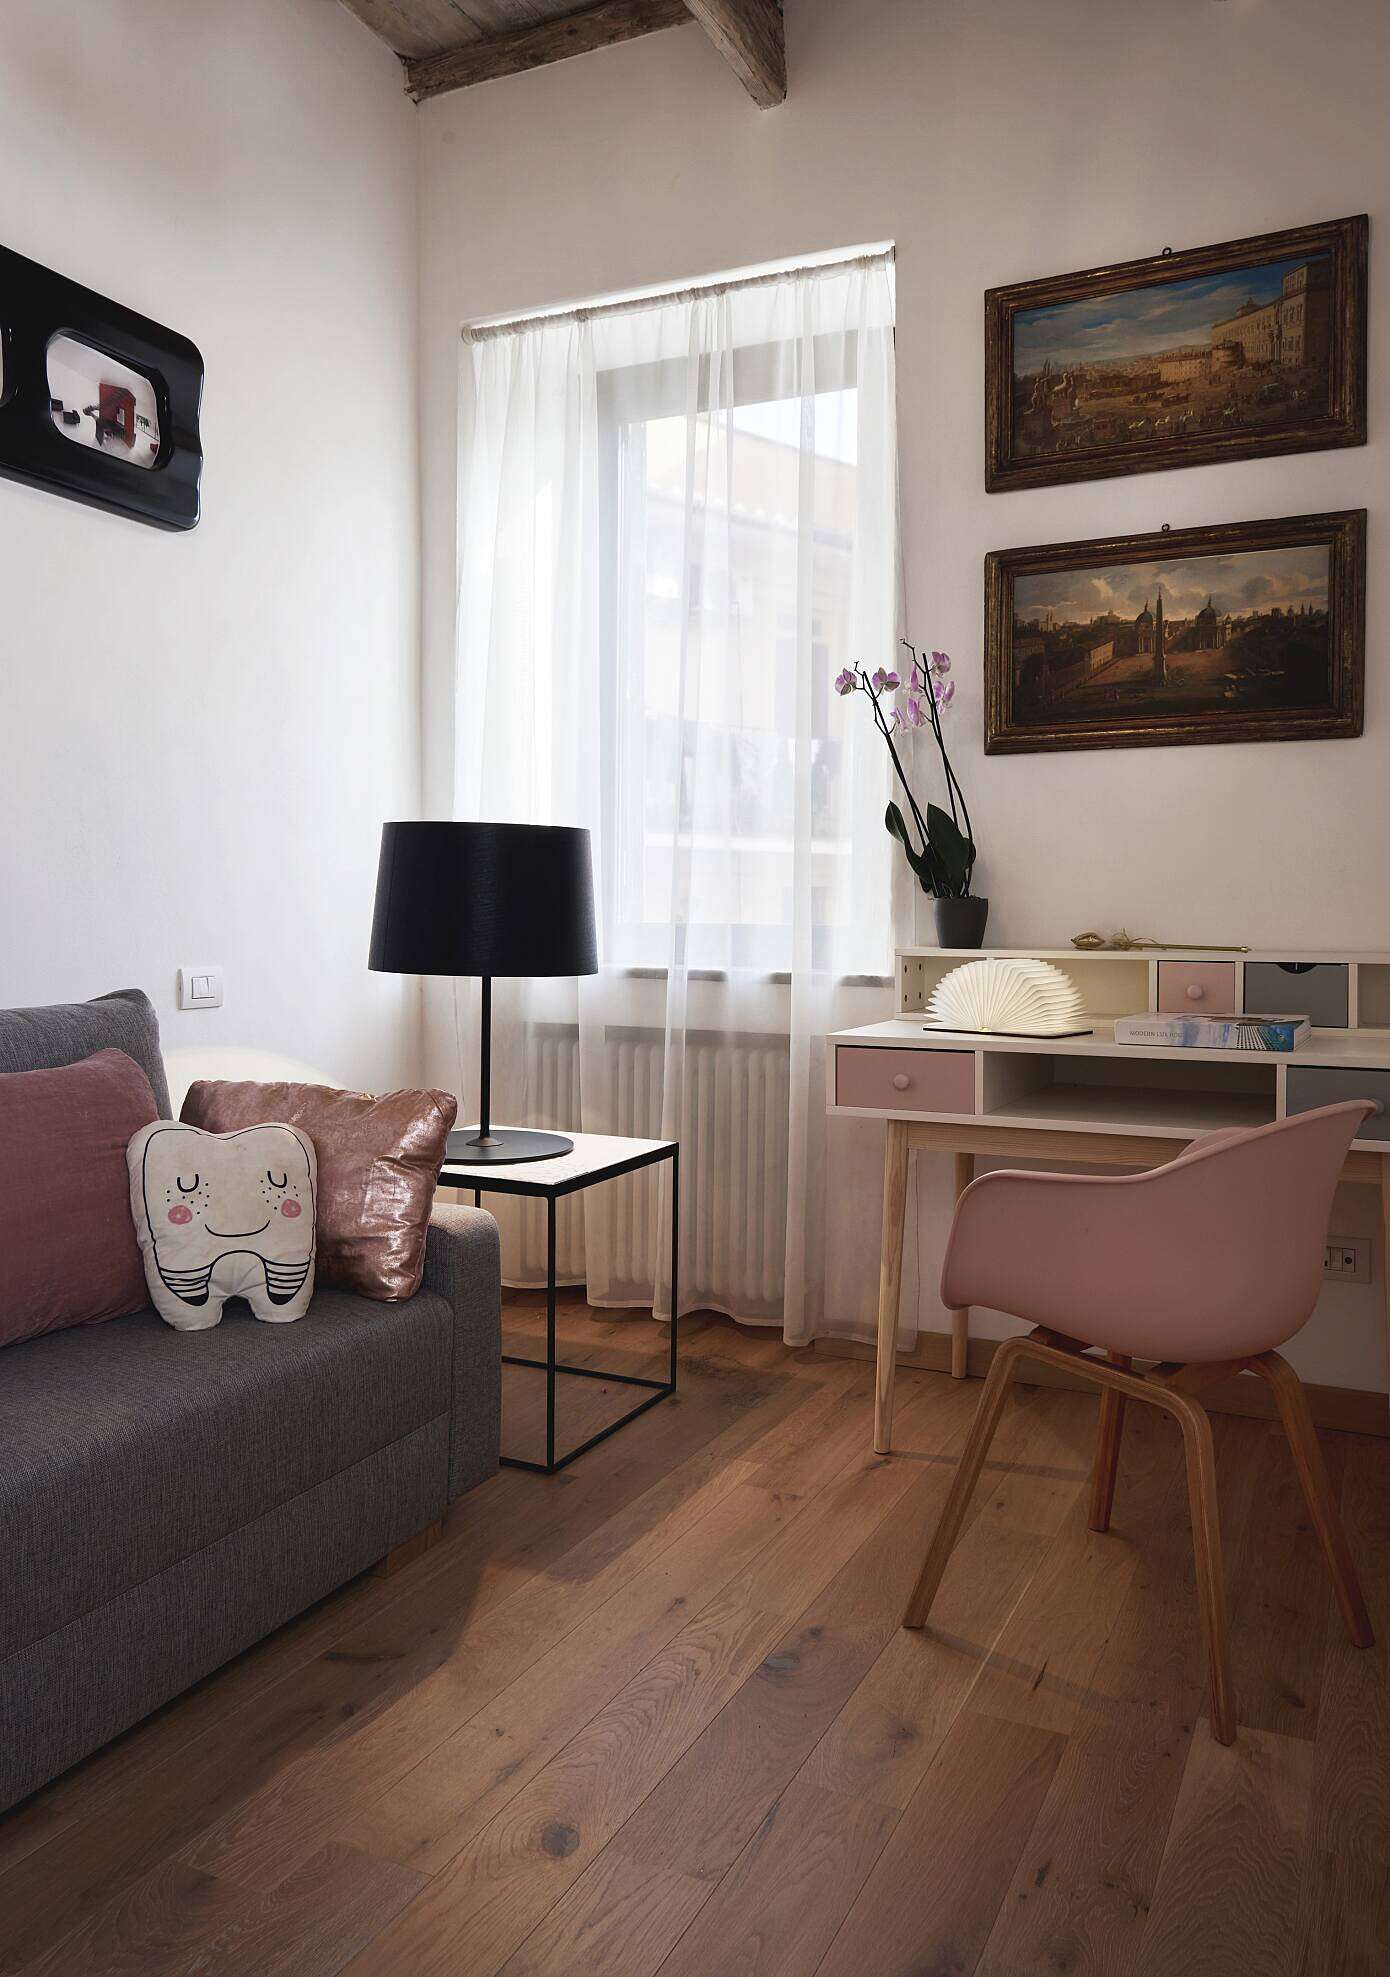 M Apartment by Carola Vannini